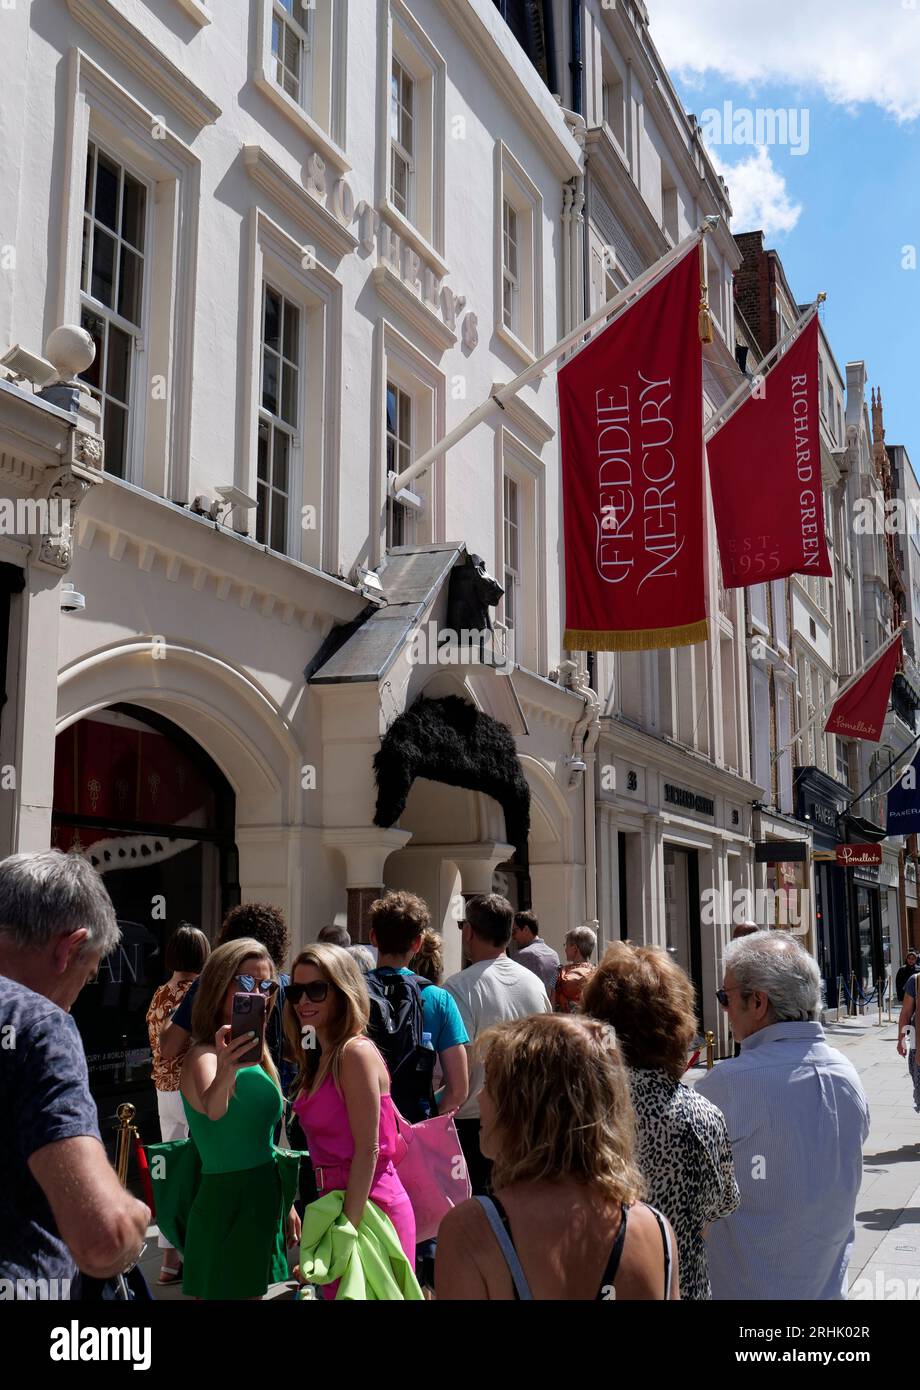 Sotherbys Freddie Mercury Eine Welt seiner eigenen Ausstellung New Bond Street Scene with Shoppers Passing, London, England, Vereinigtes Königreich Stockfoto